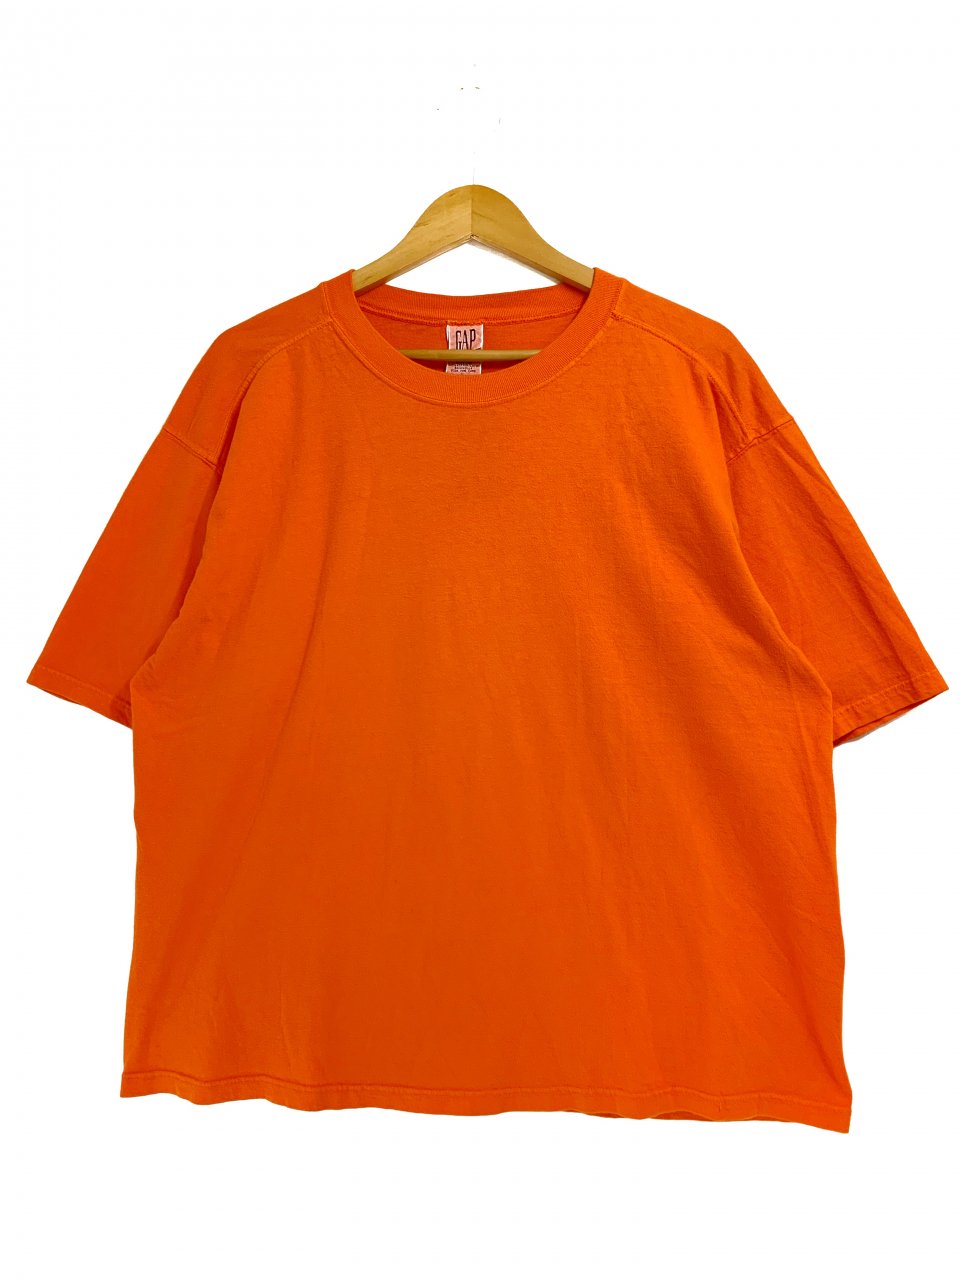 2000年製 OLD GAP vtg リンガー tシャツ グレー オレンジ 黒